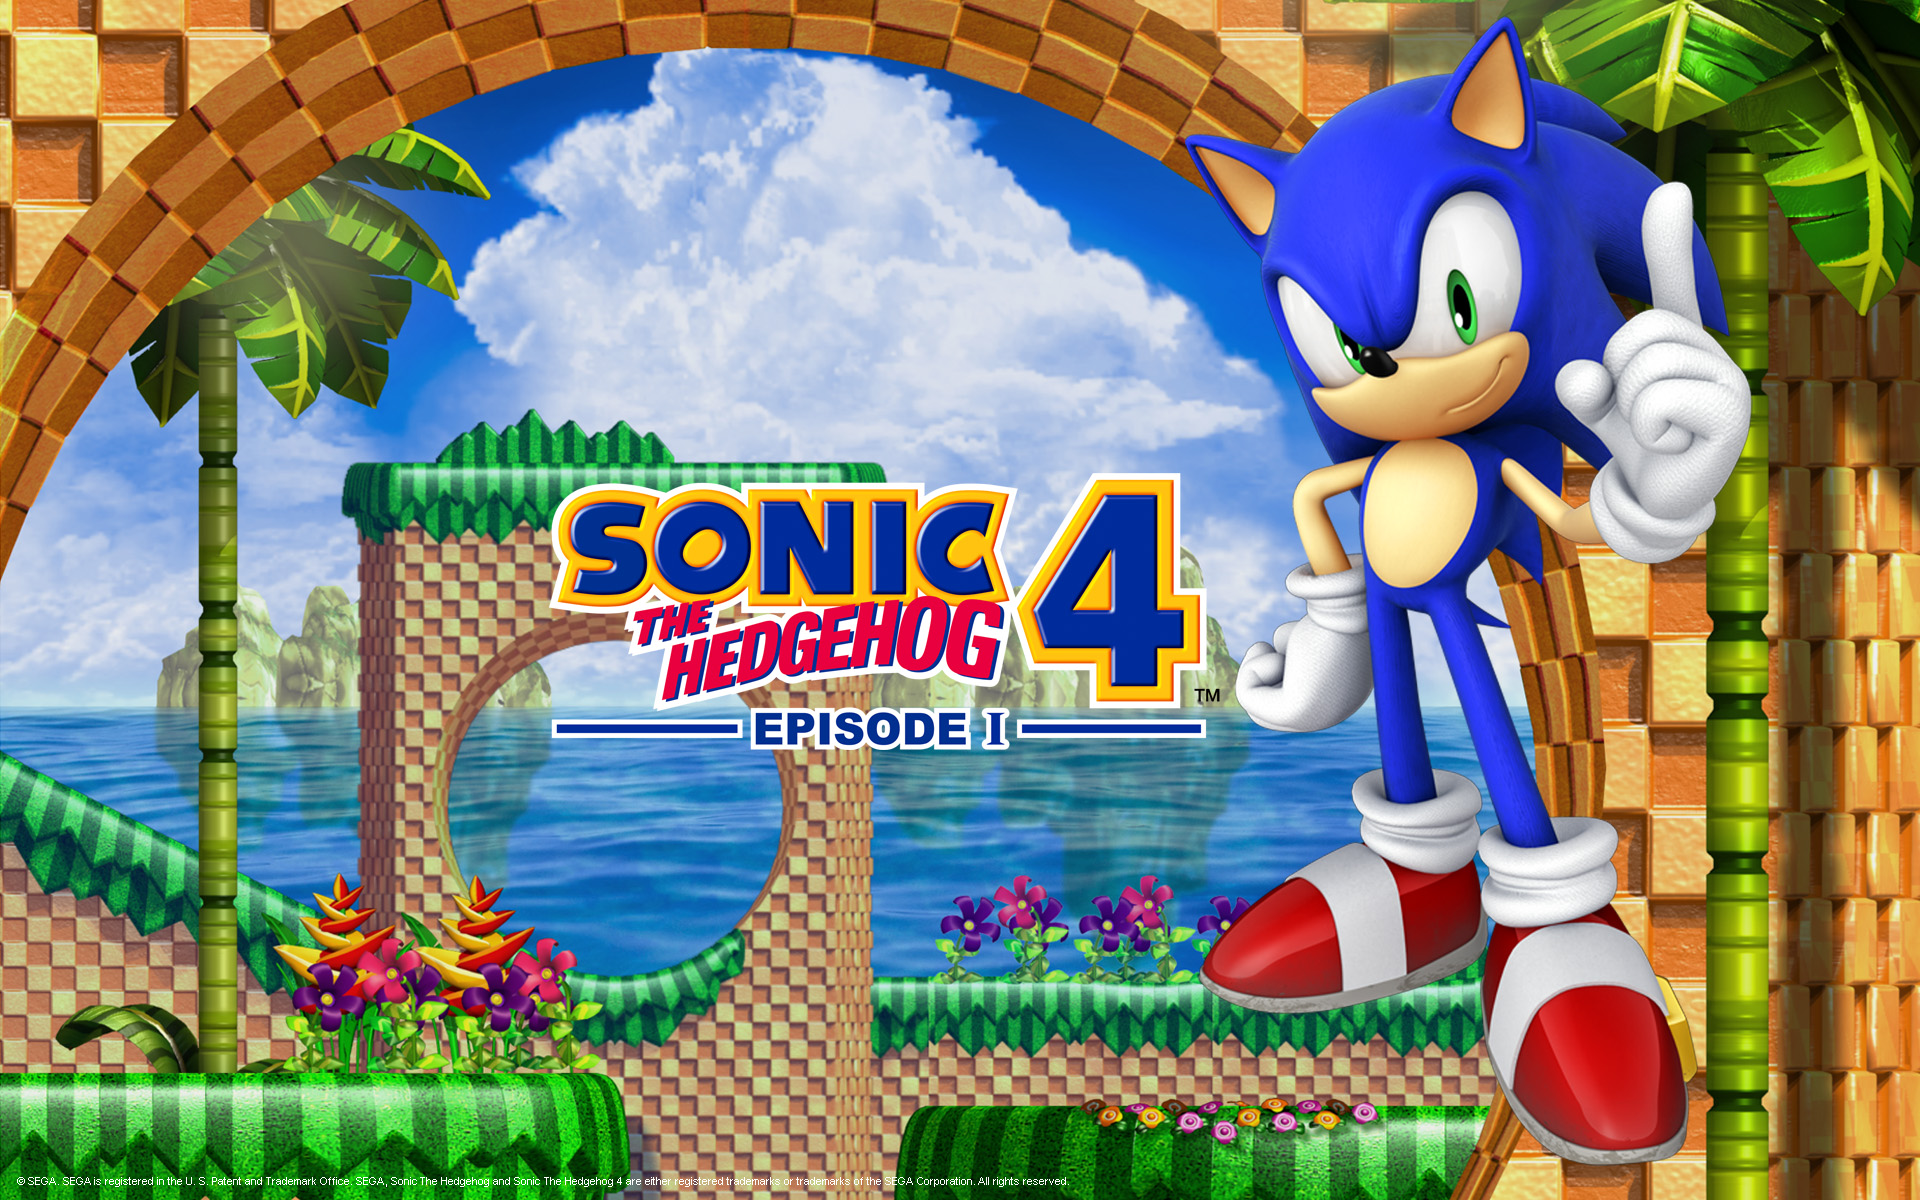 Sonic the Hedgehog 4: Episode I (English) WiiWare WAD - NostalgiaLand